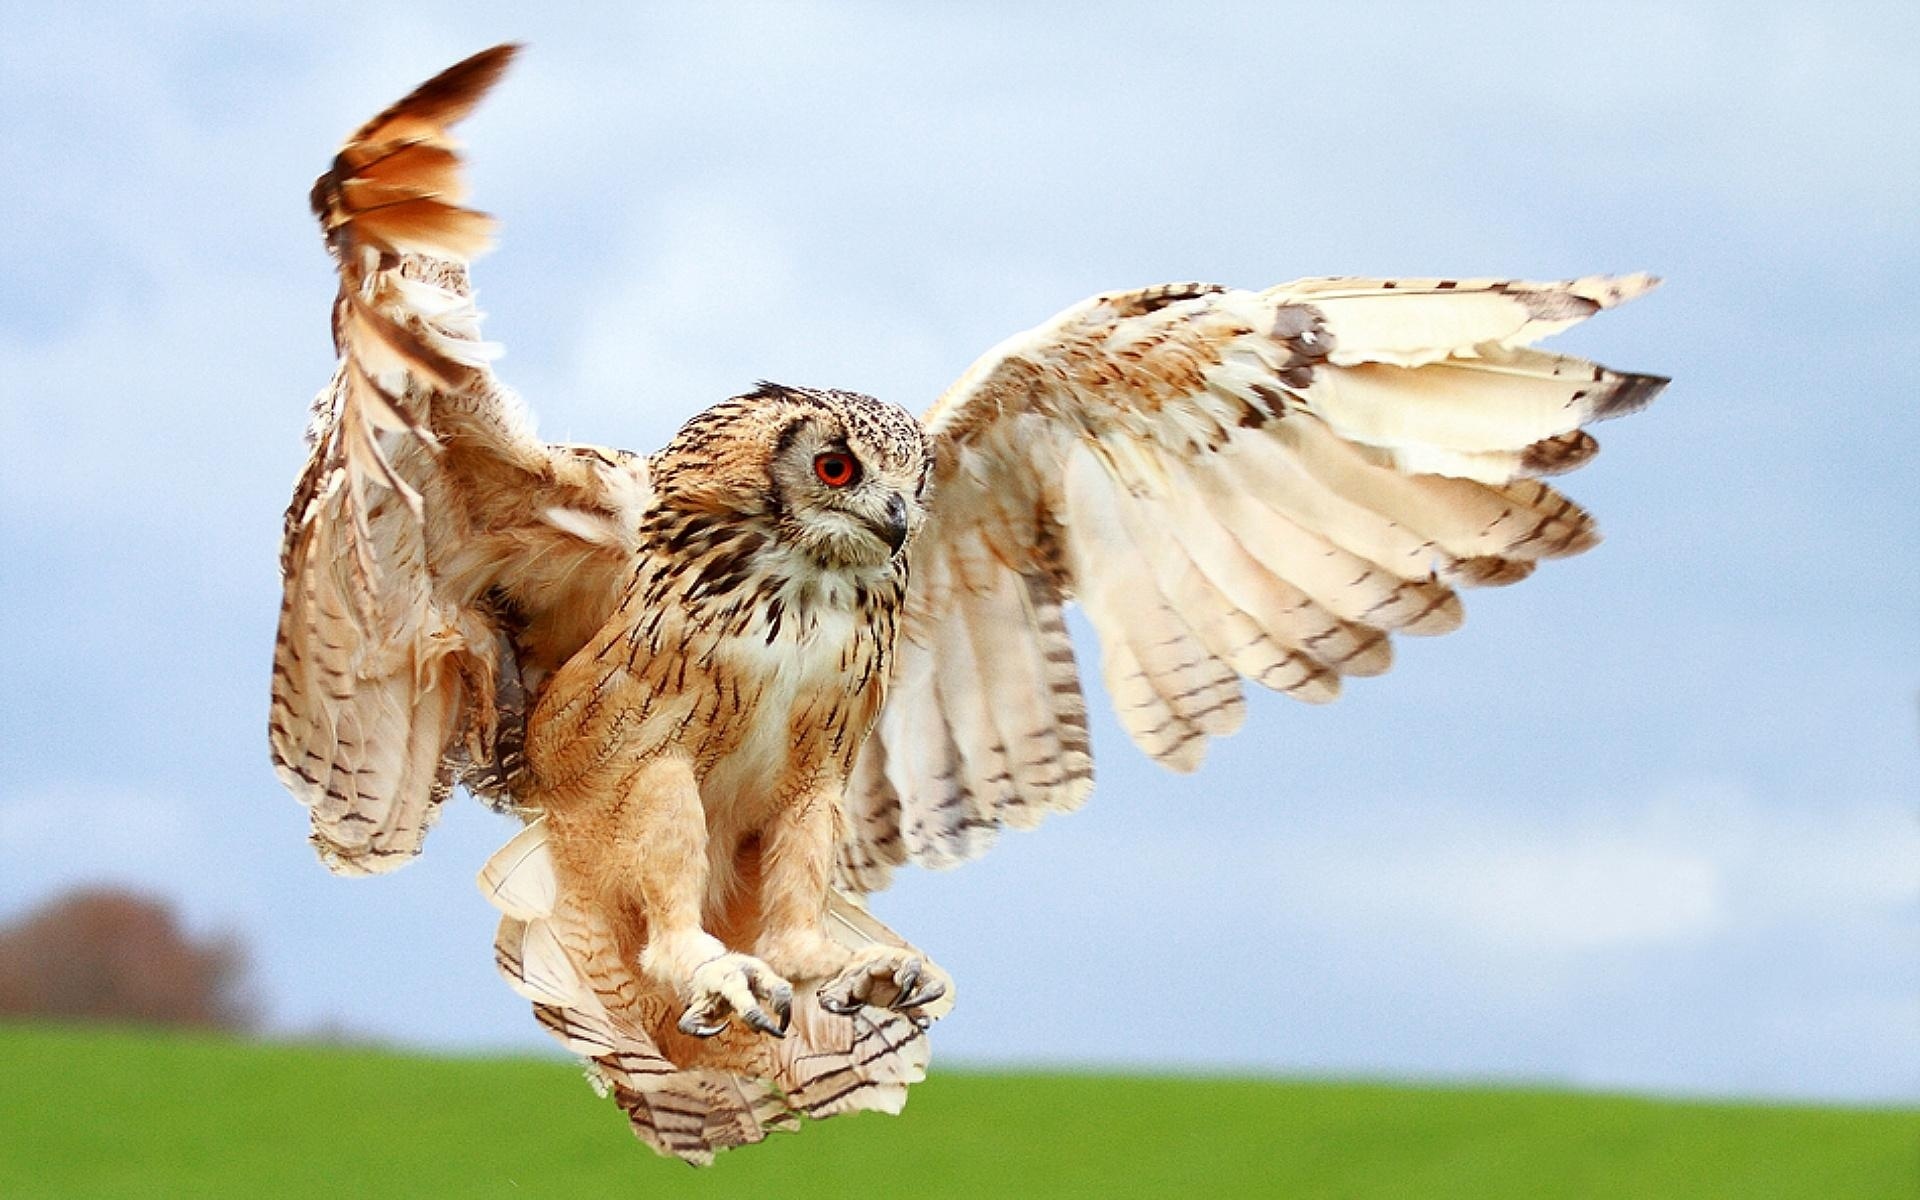 Wallpapers owl flight wings on the desktop